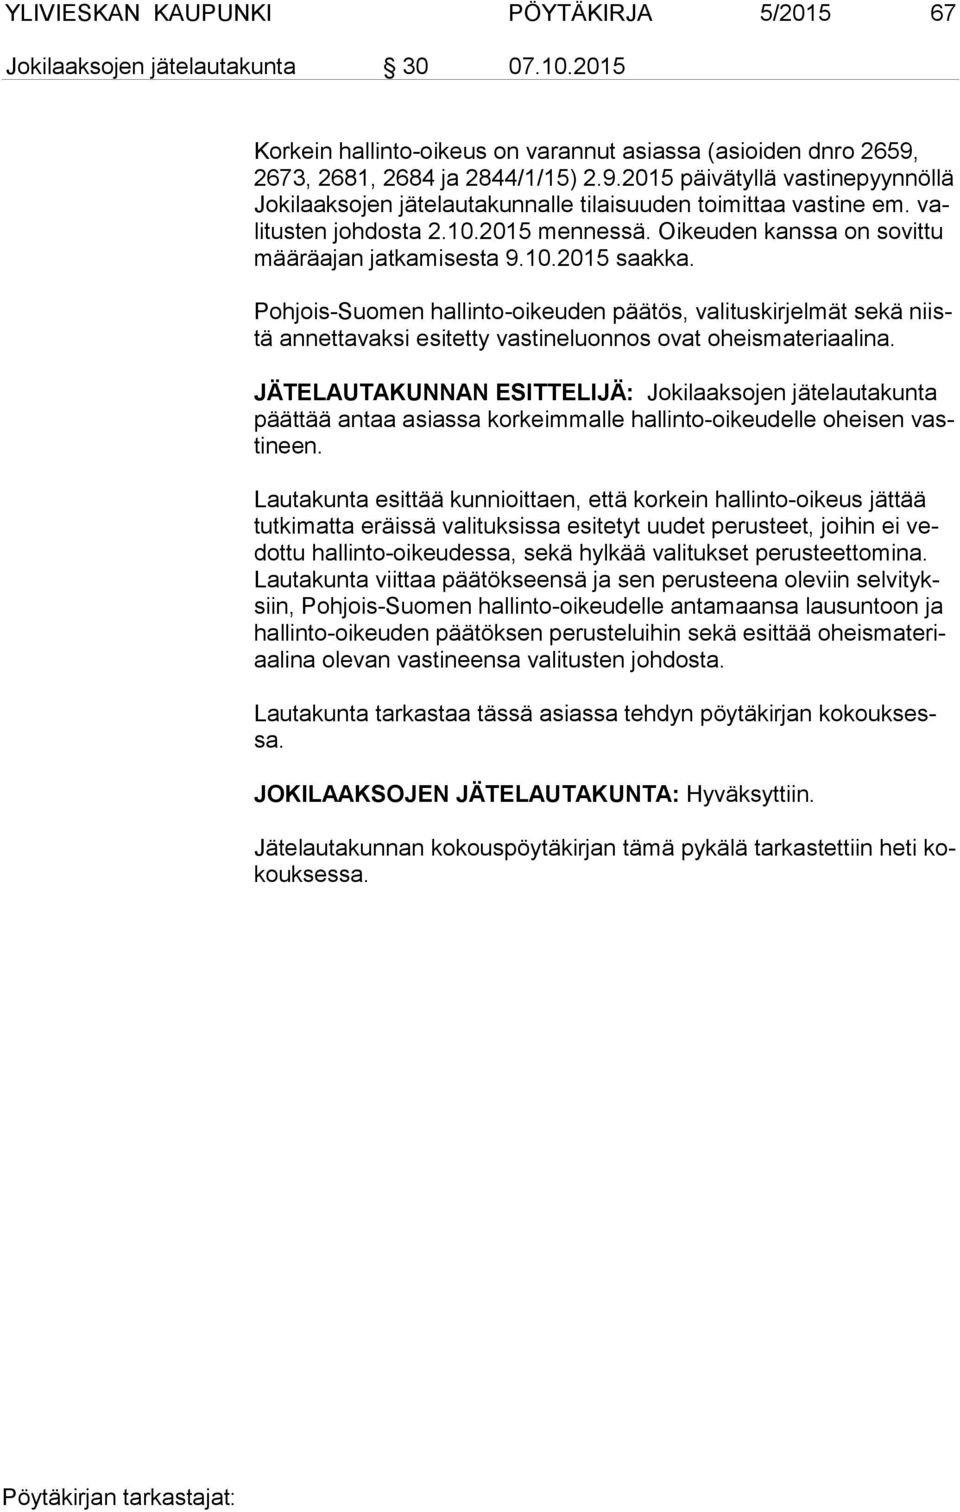 Oikeuden kanssa on sovittu mää rä ajan jatkamisesta 9.10.2015 saakka. Pohjois-Suomen hallinto-oikeuden päätös, valituskirjelmät sekä niistä annettavaksi esitetty vastineluonnos ovat oheismateriaalina.